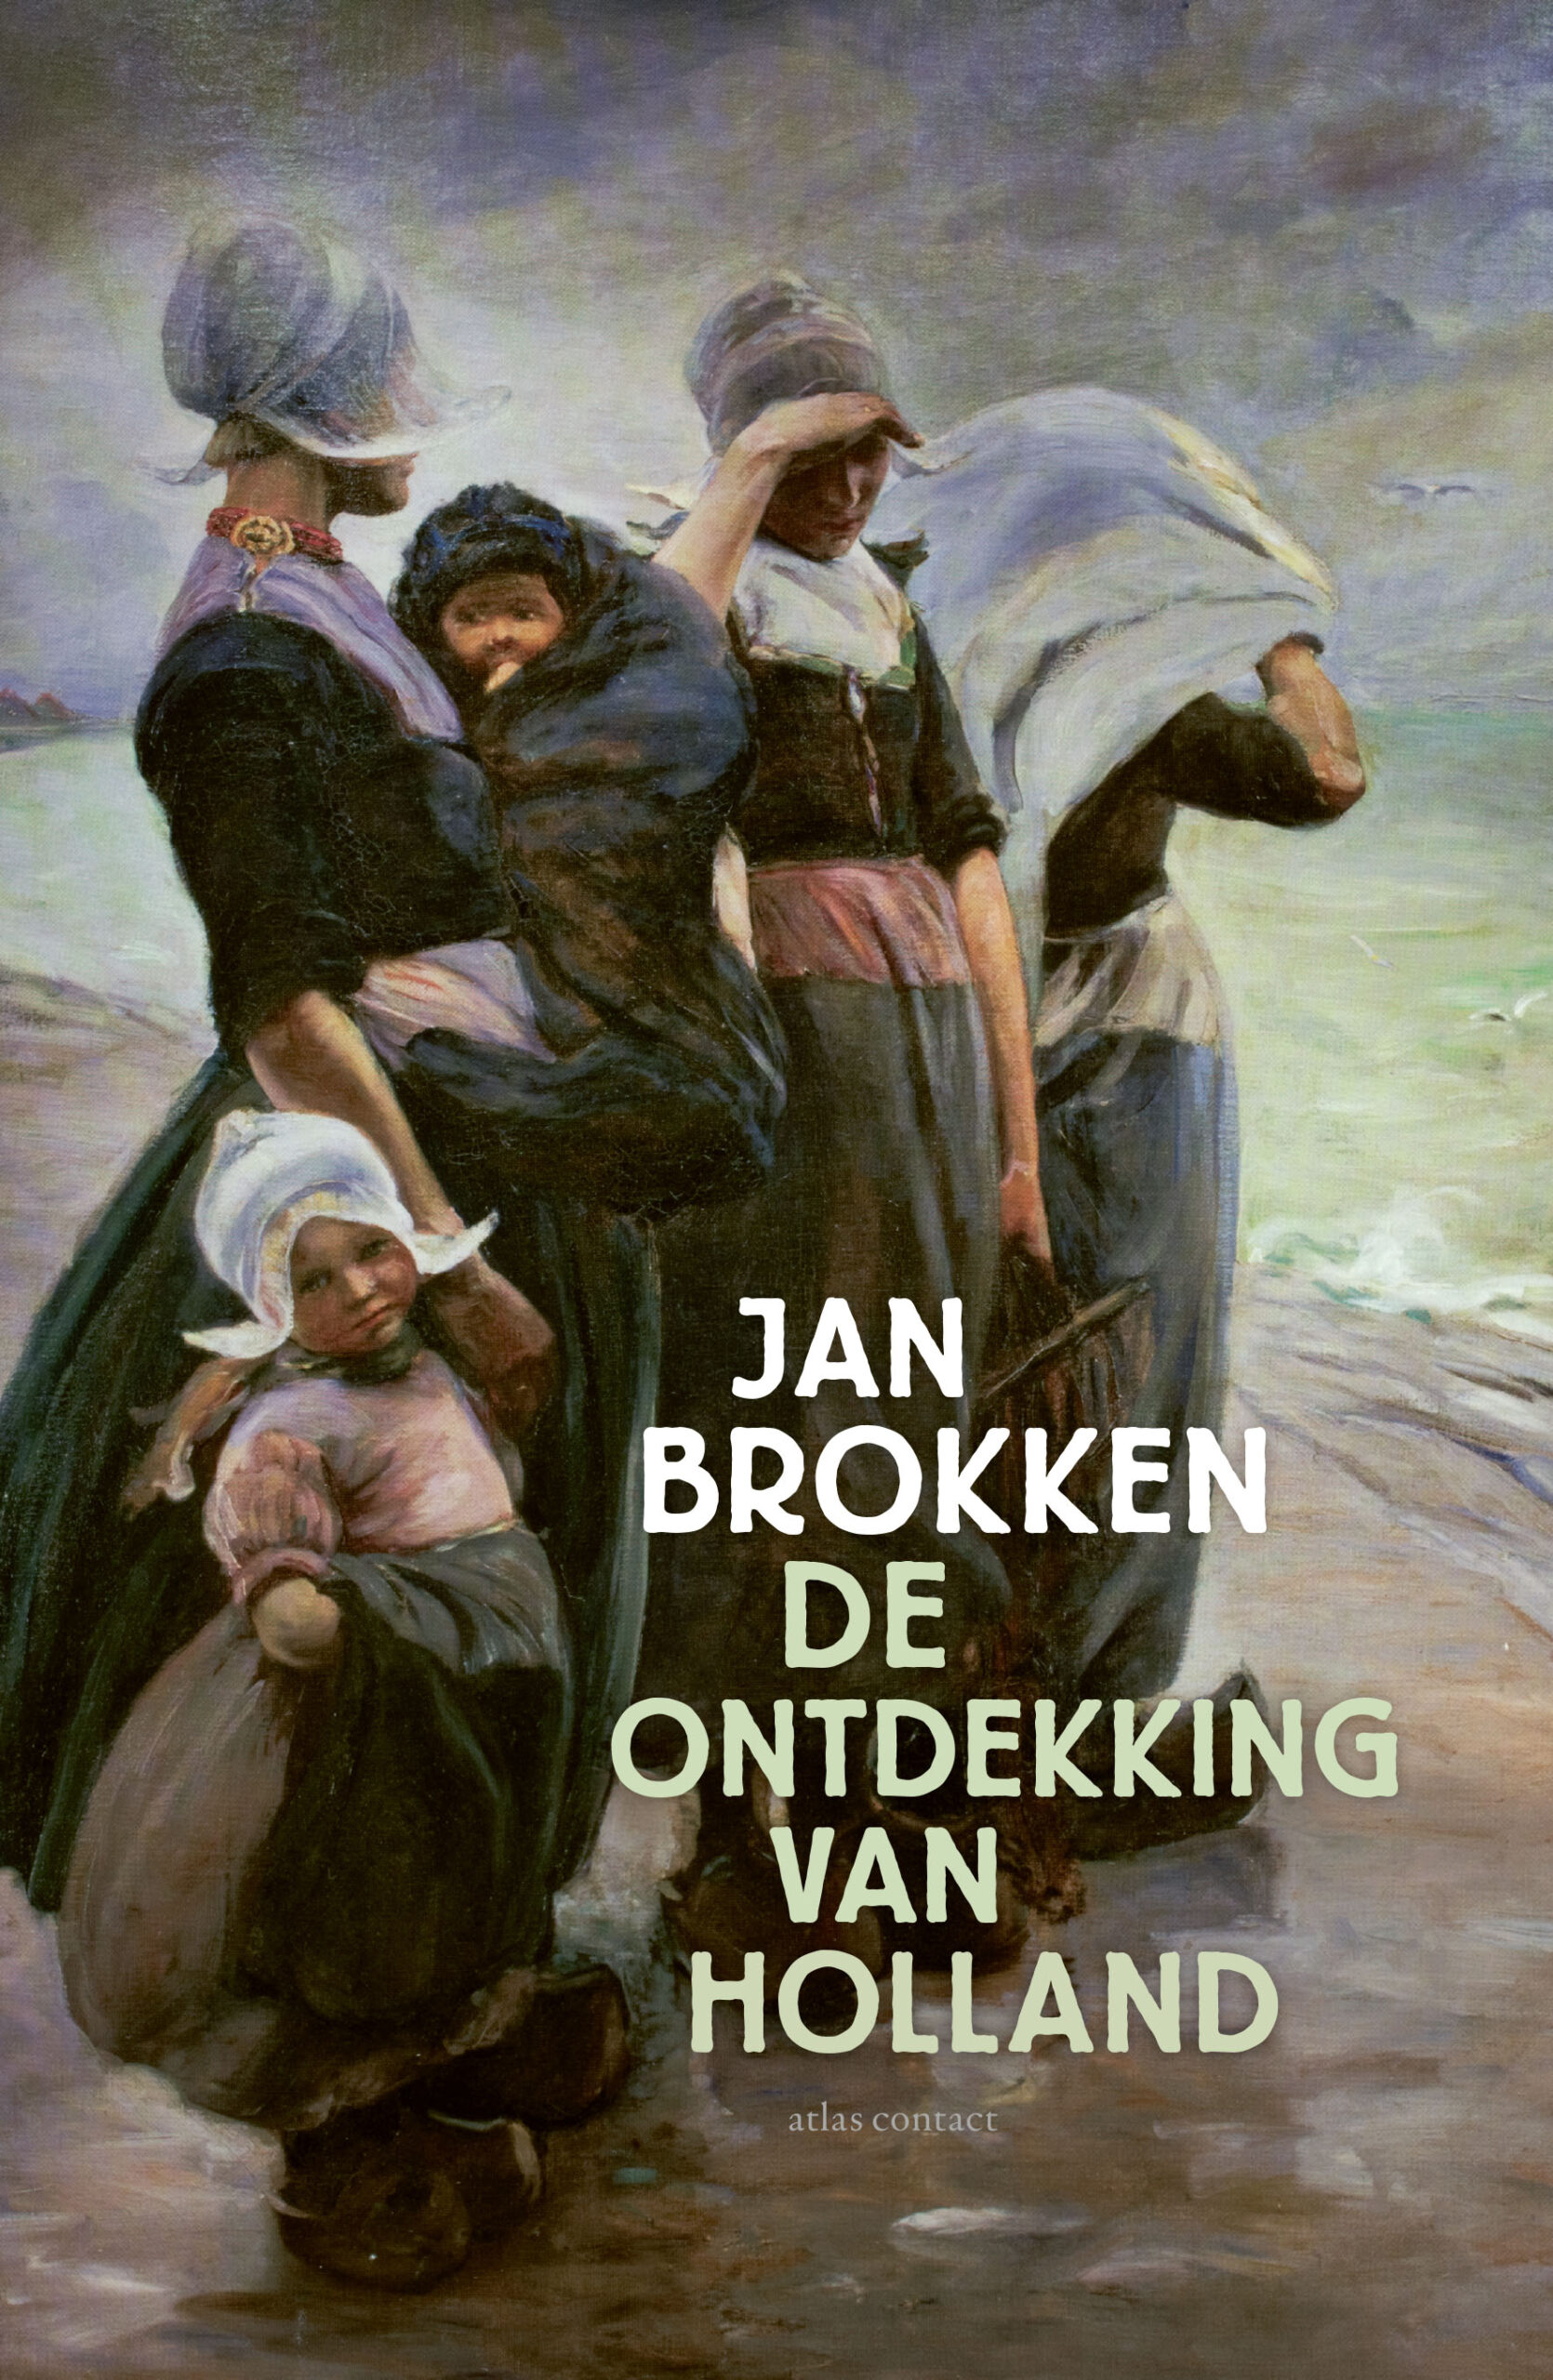 Jan Brokken over ‘De ontdekking van Holland’ in Rotterdam